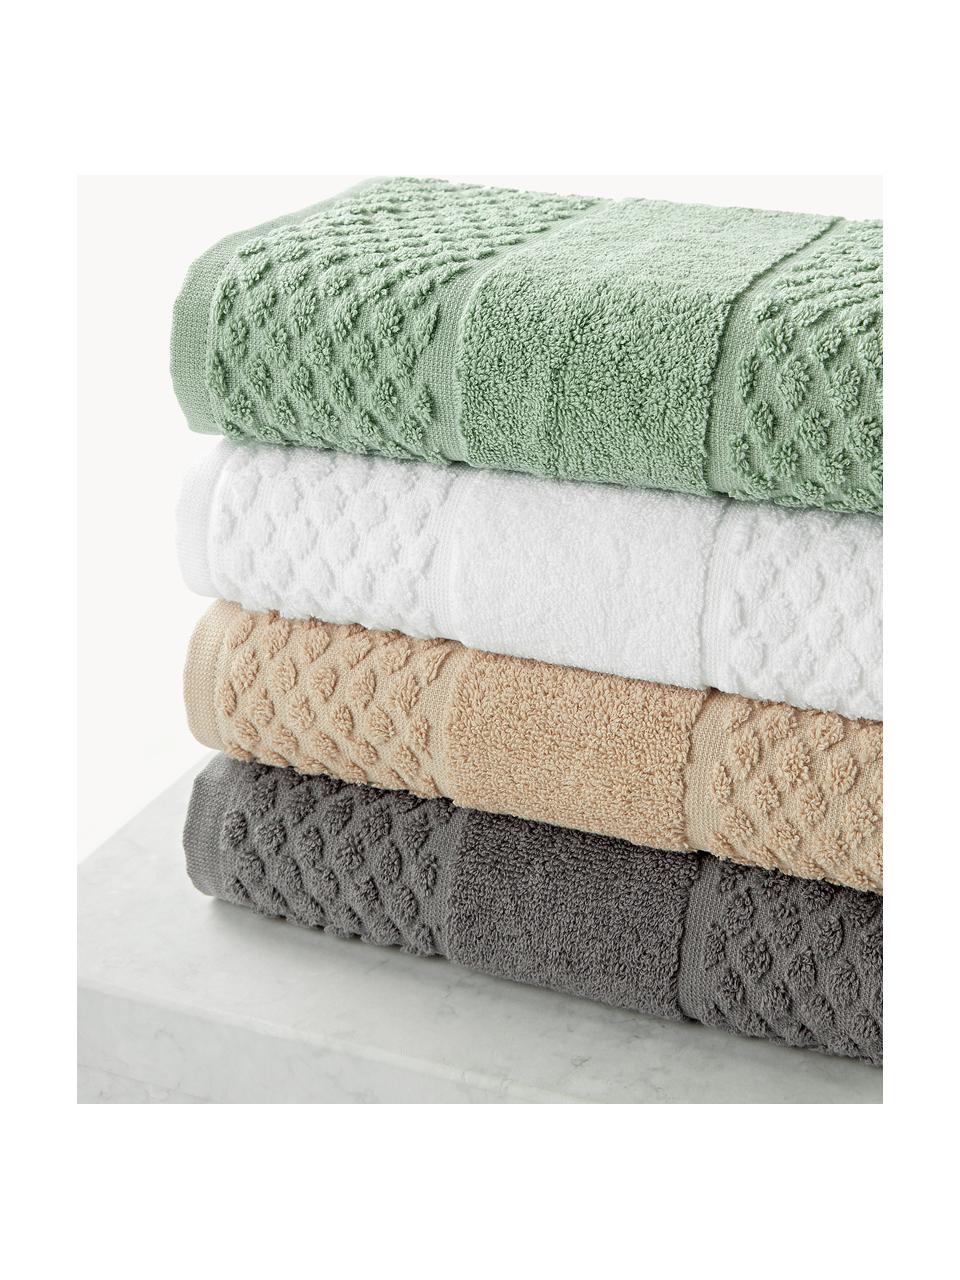 Lot de serviettes de bain Katharina, tailles variées, Blanc, 4 éléments (2 serviettes de toilette et 2 draps de bain)